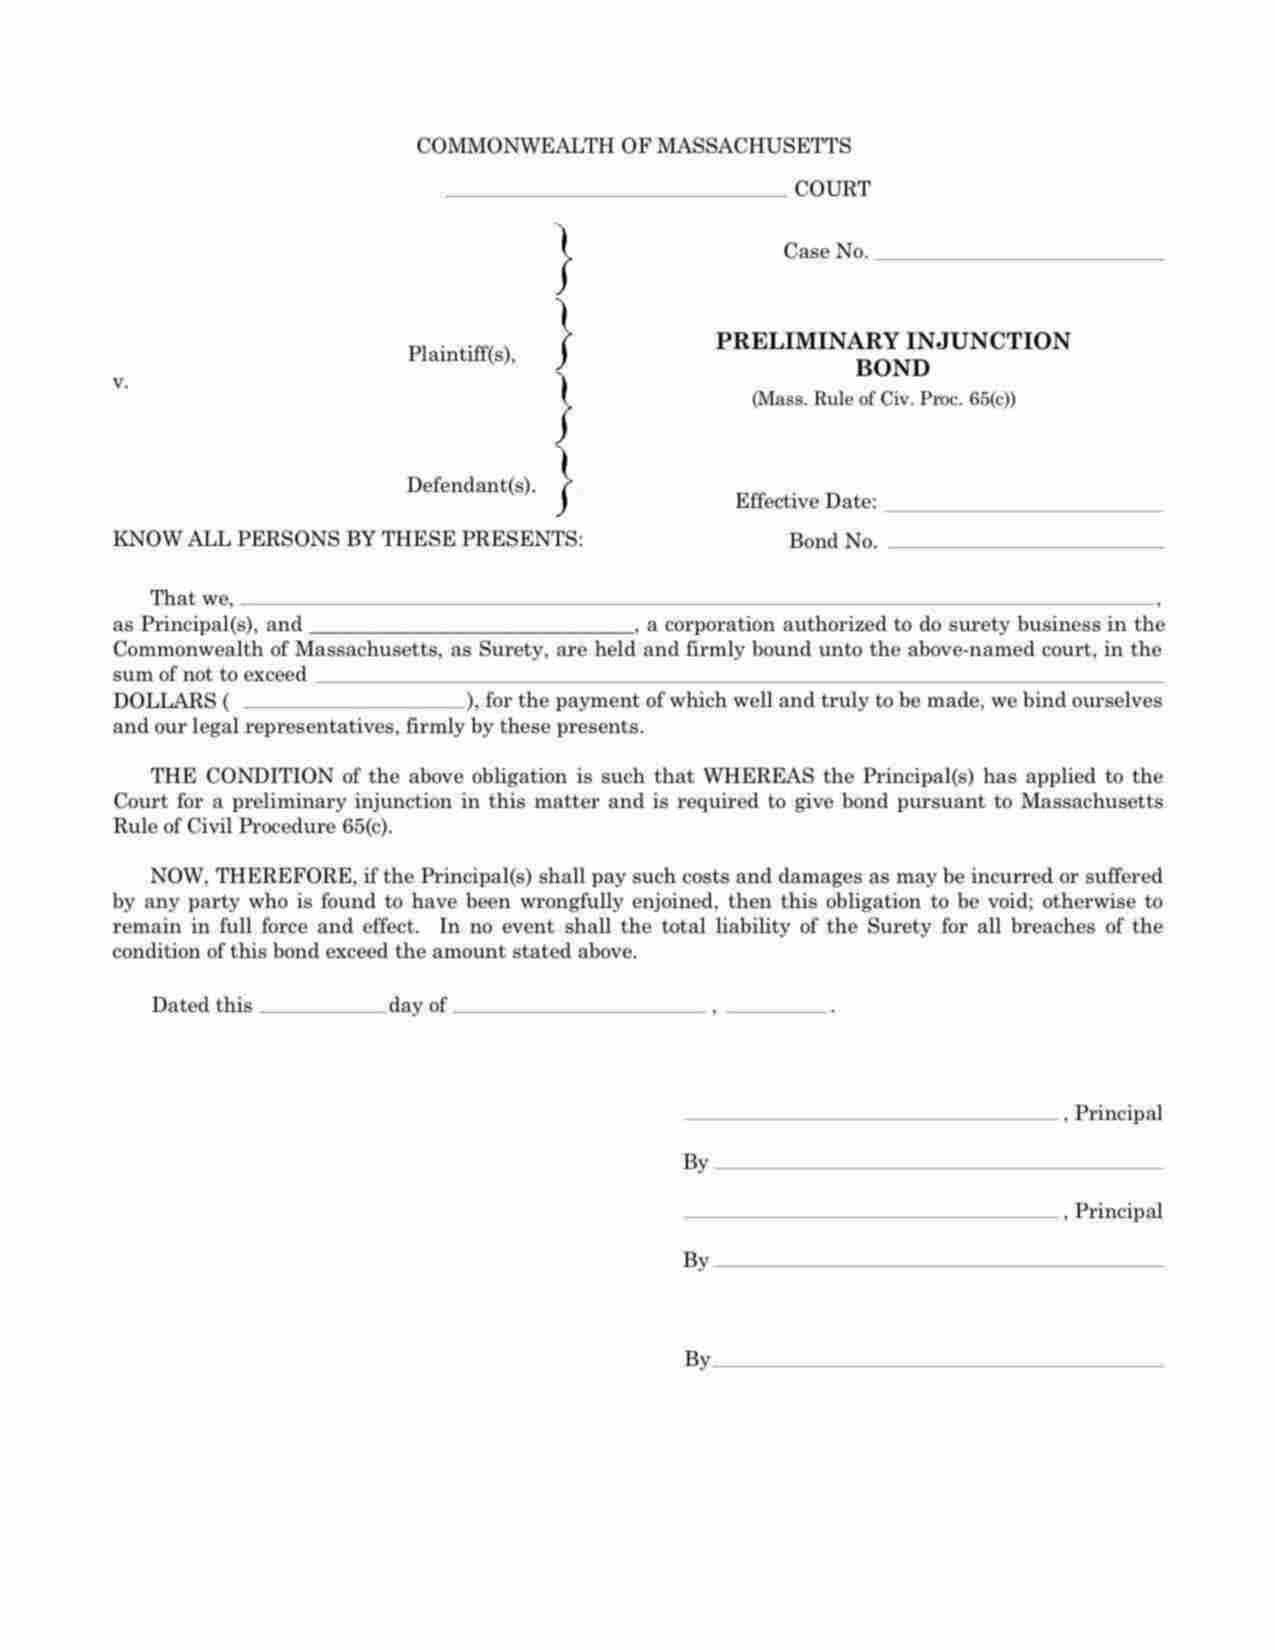 Massachusetts Preliminary Injunction Bond Form